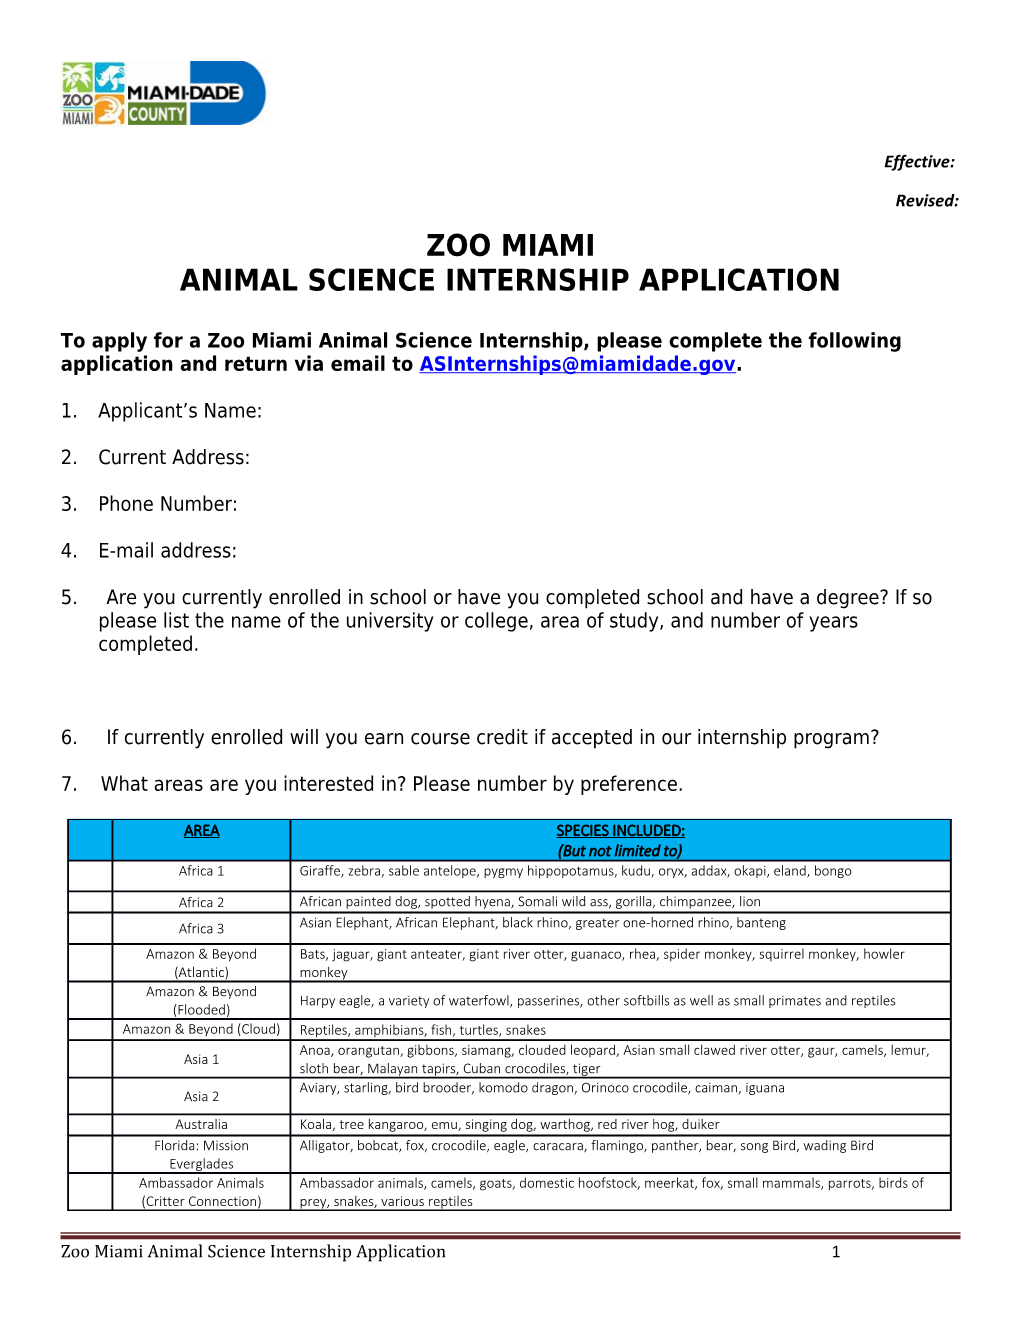 Animal Science Internship Application